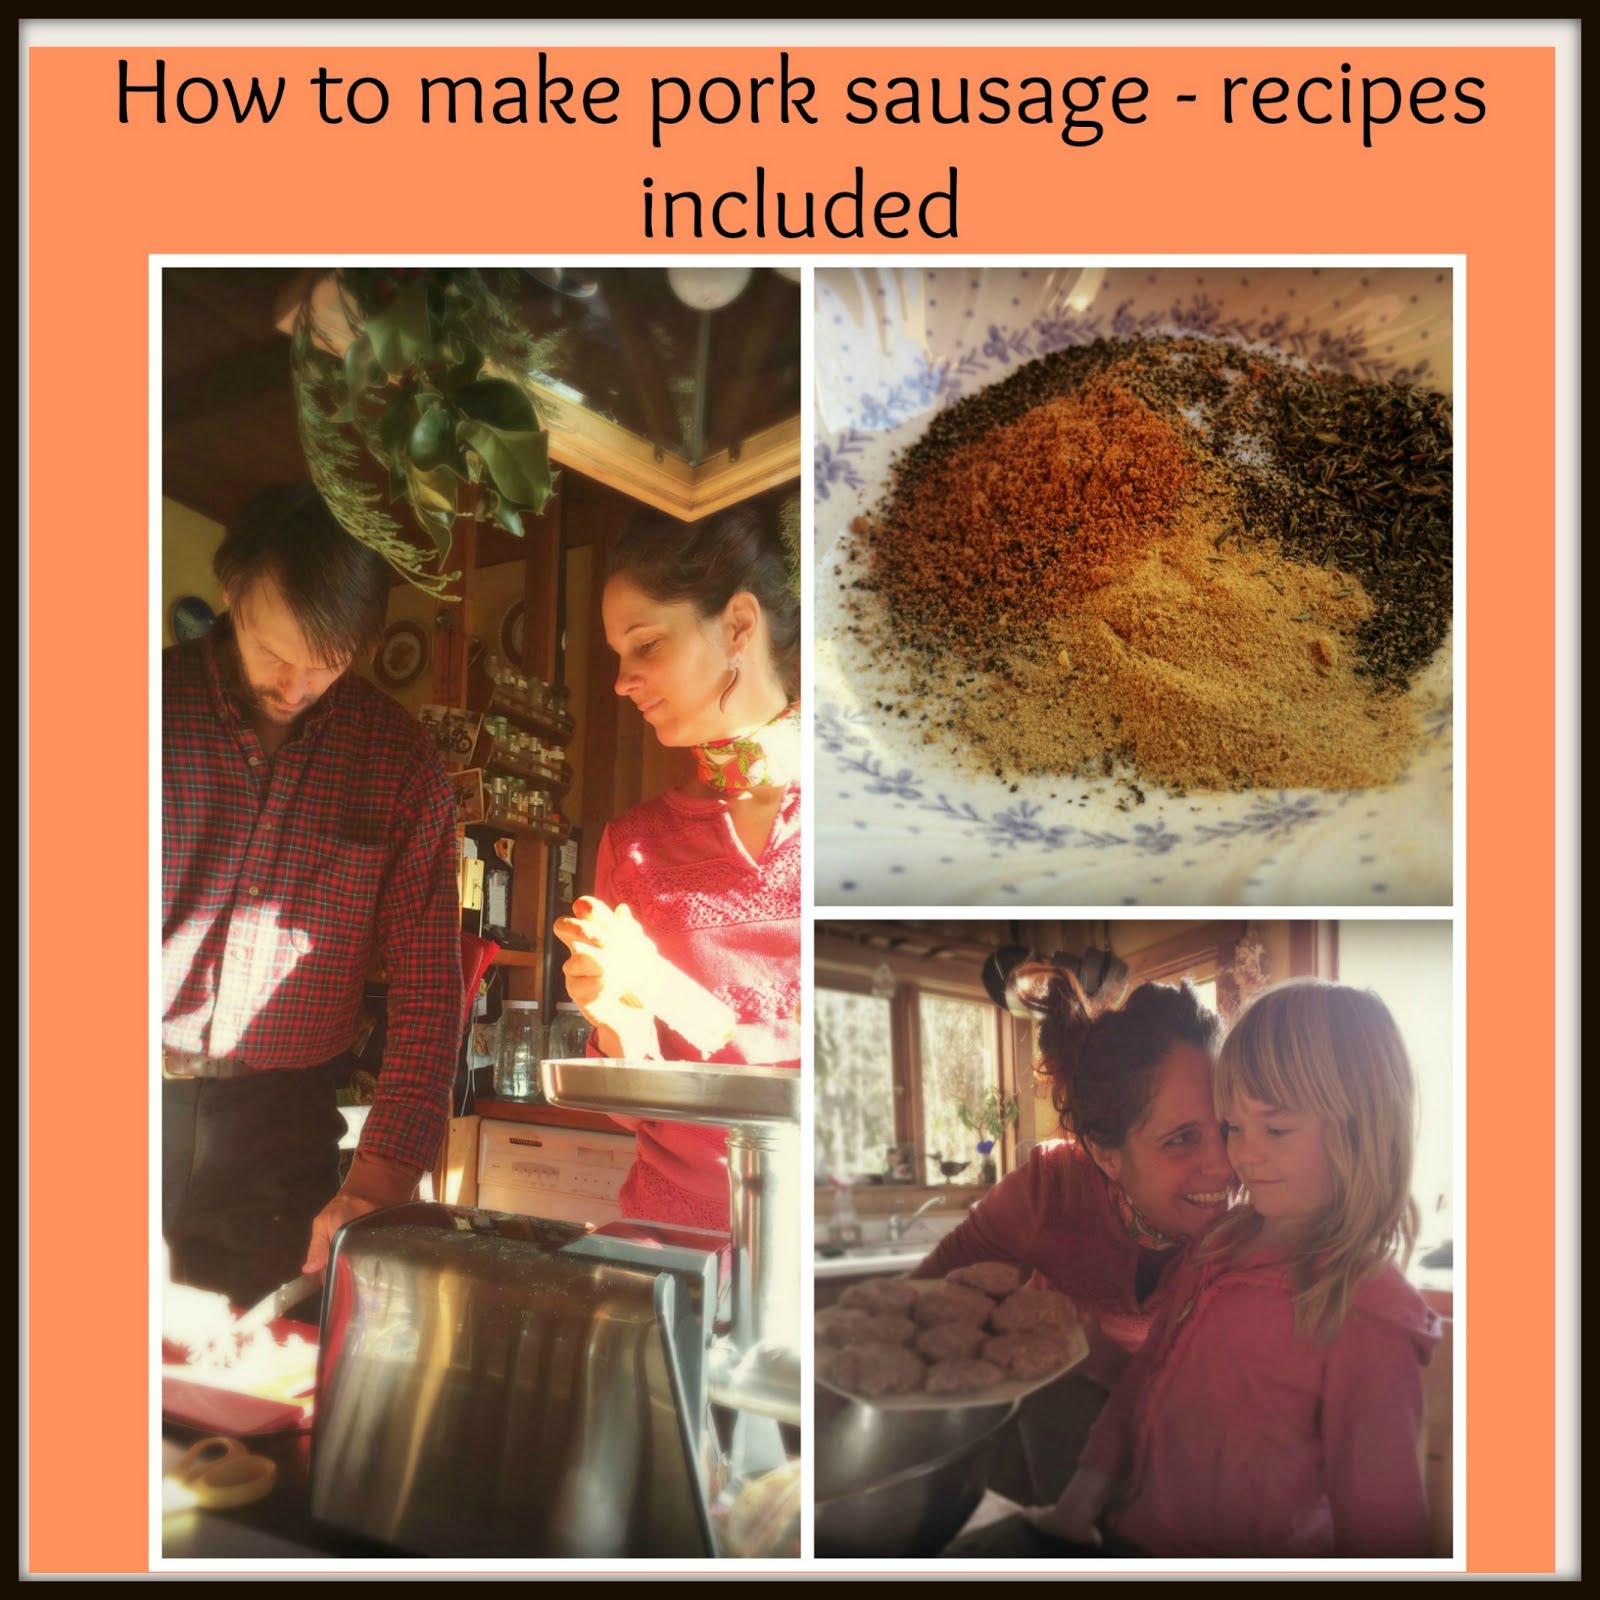 How to make pork sausage